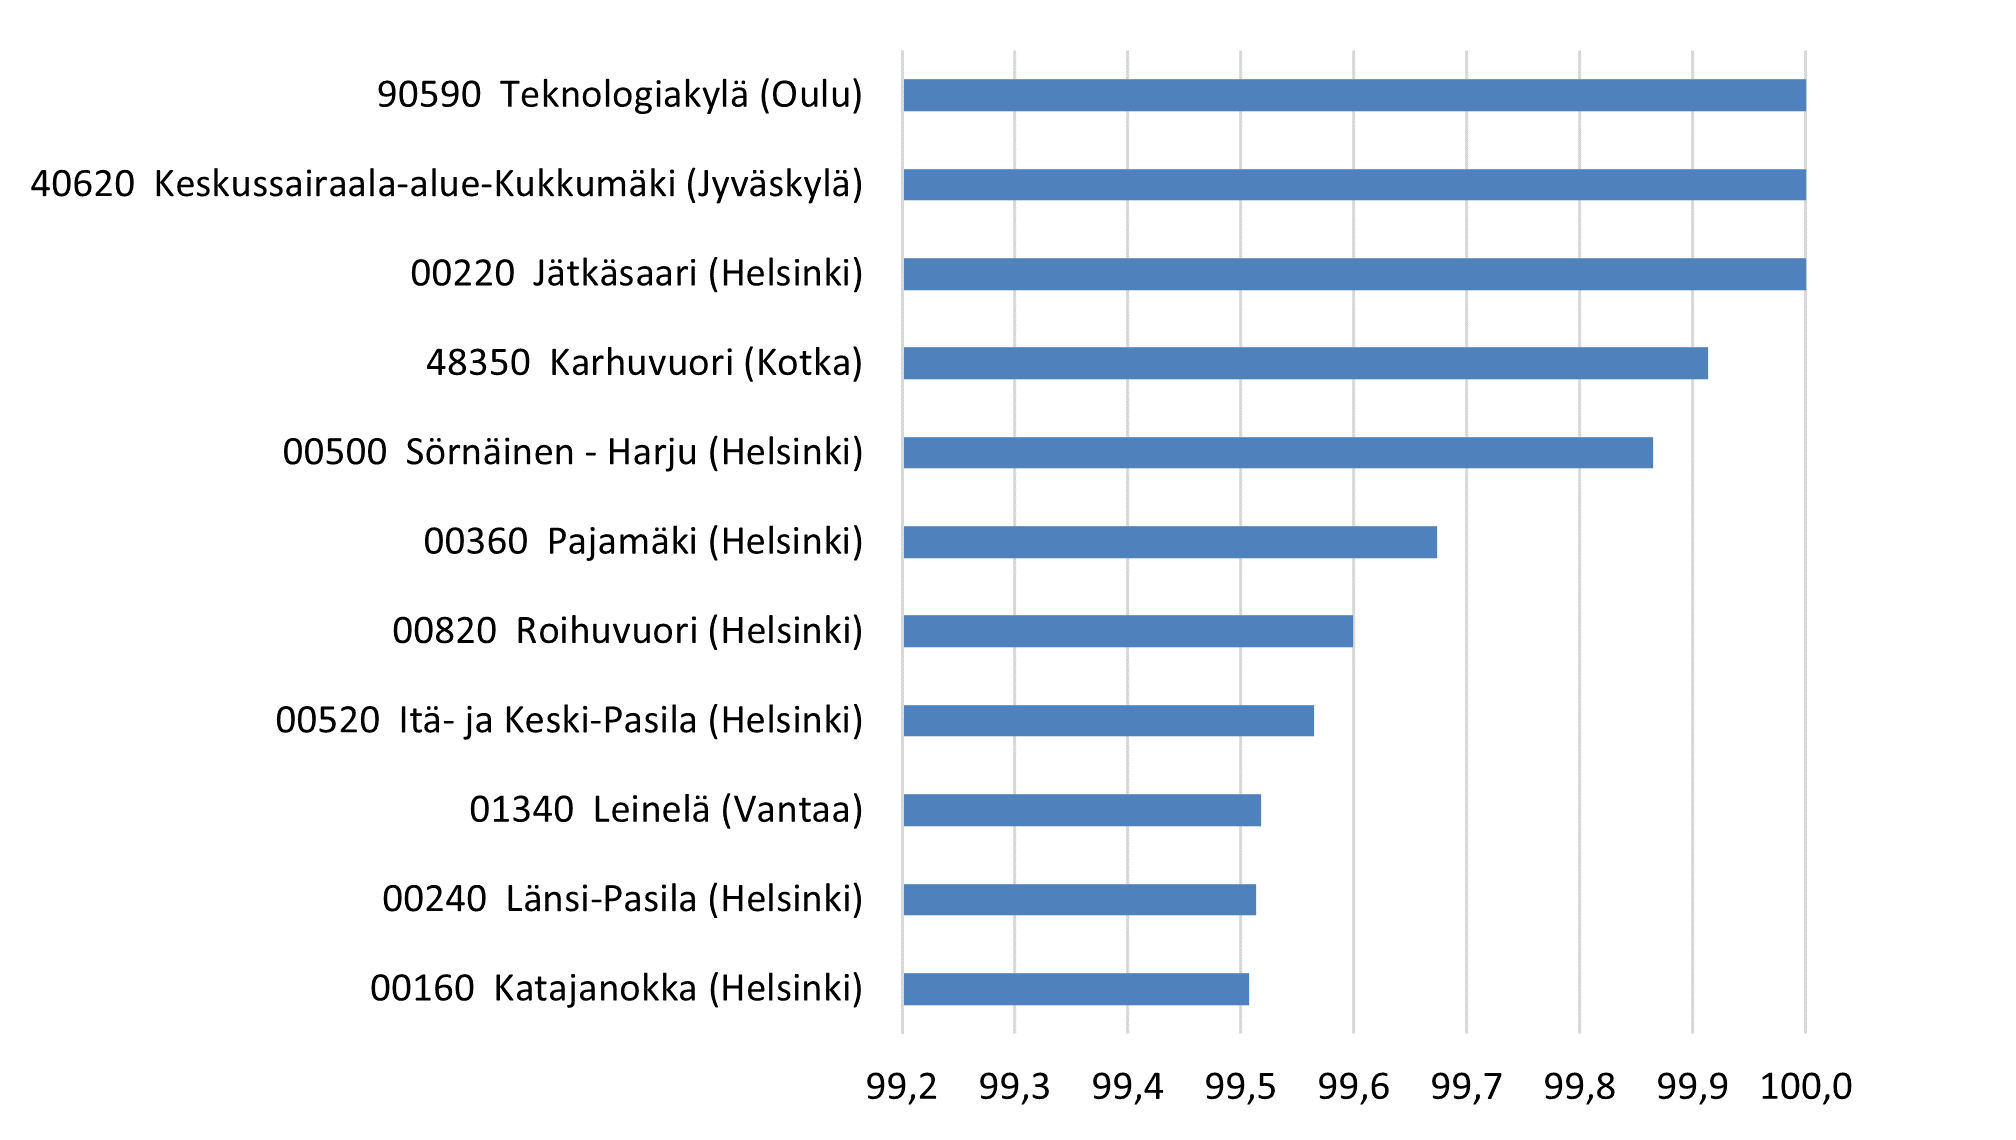 The figure shows the postal code areas with most dwellings in blocks of flats in relative terms. In the postal code areas 90590 Teknologiakylä (Oulu), 40620 Keskussairaala-alue-Kukkumäki (Jyväskylä) and 00220 Jätkäsaari (Helsinki), 100 per cent of the dwelling stock comprises blocks of flats. In the areas 48350 Karhuvuori (Kotka) and 00500 Sörnäinen-Harju (Helsinki) blocks of flats account for 99.9 per cent, in 00360 Pajamäki (Helsinki) for 99.7 per cent, in 00820 Roihuvuori (Helsinki) and 00520 Itä- ja Keski-Pasila (Helsinki) for 99.6 per cent and in 01340 Leinelä (Vantaa), 00240 Länsi-Pasila (Helsinki) and 00160 Katajanokka (Helsinki) for 99.5 per cent of the dwelling stock.